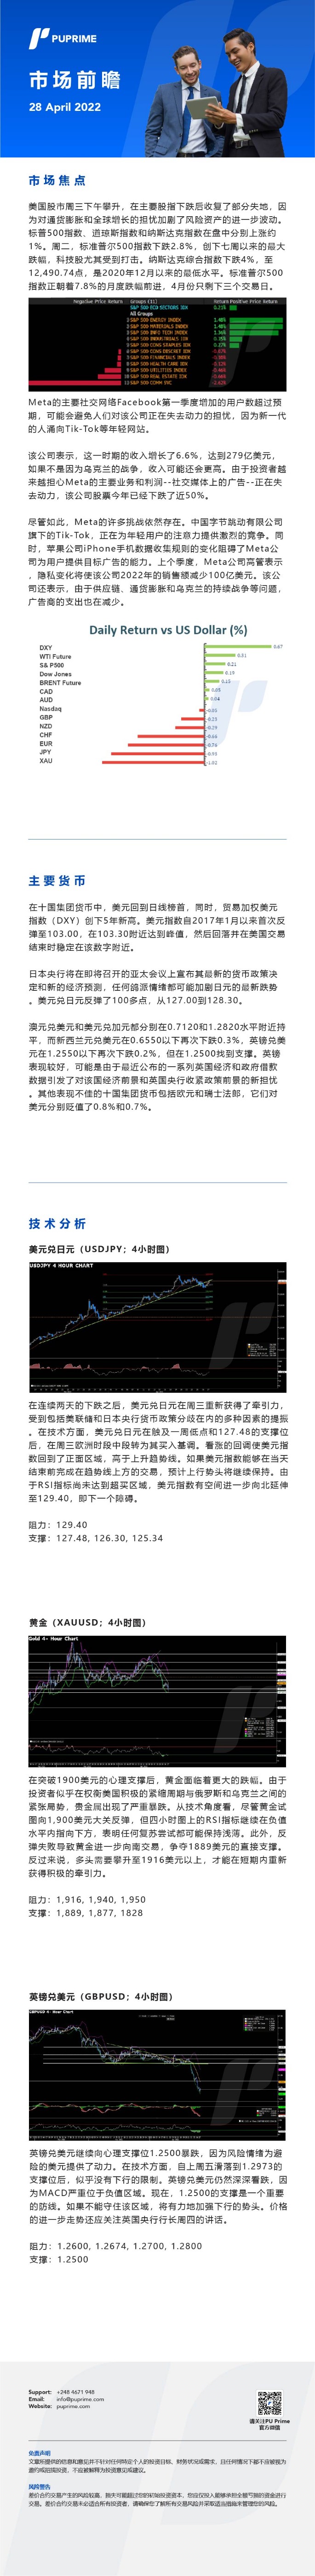 28042022 Daily Market Analysis__CHN.jpg